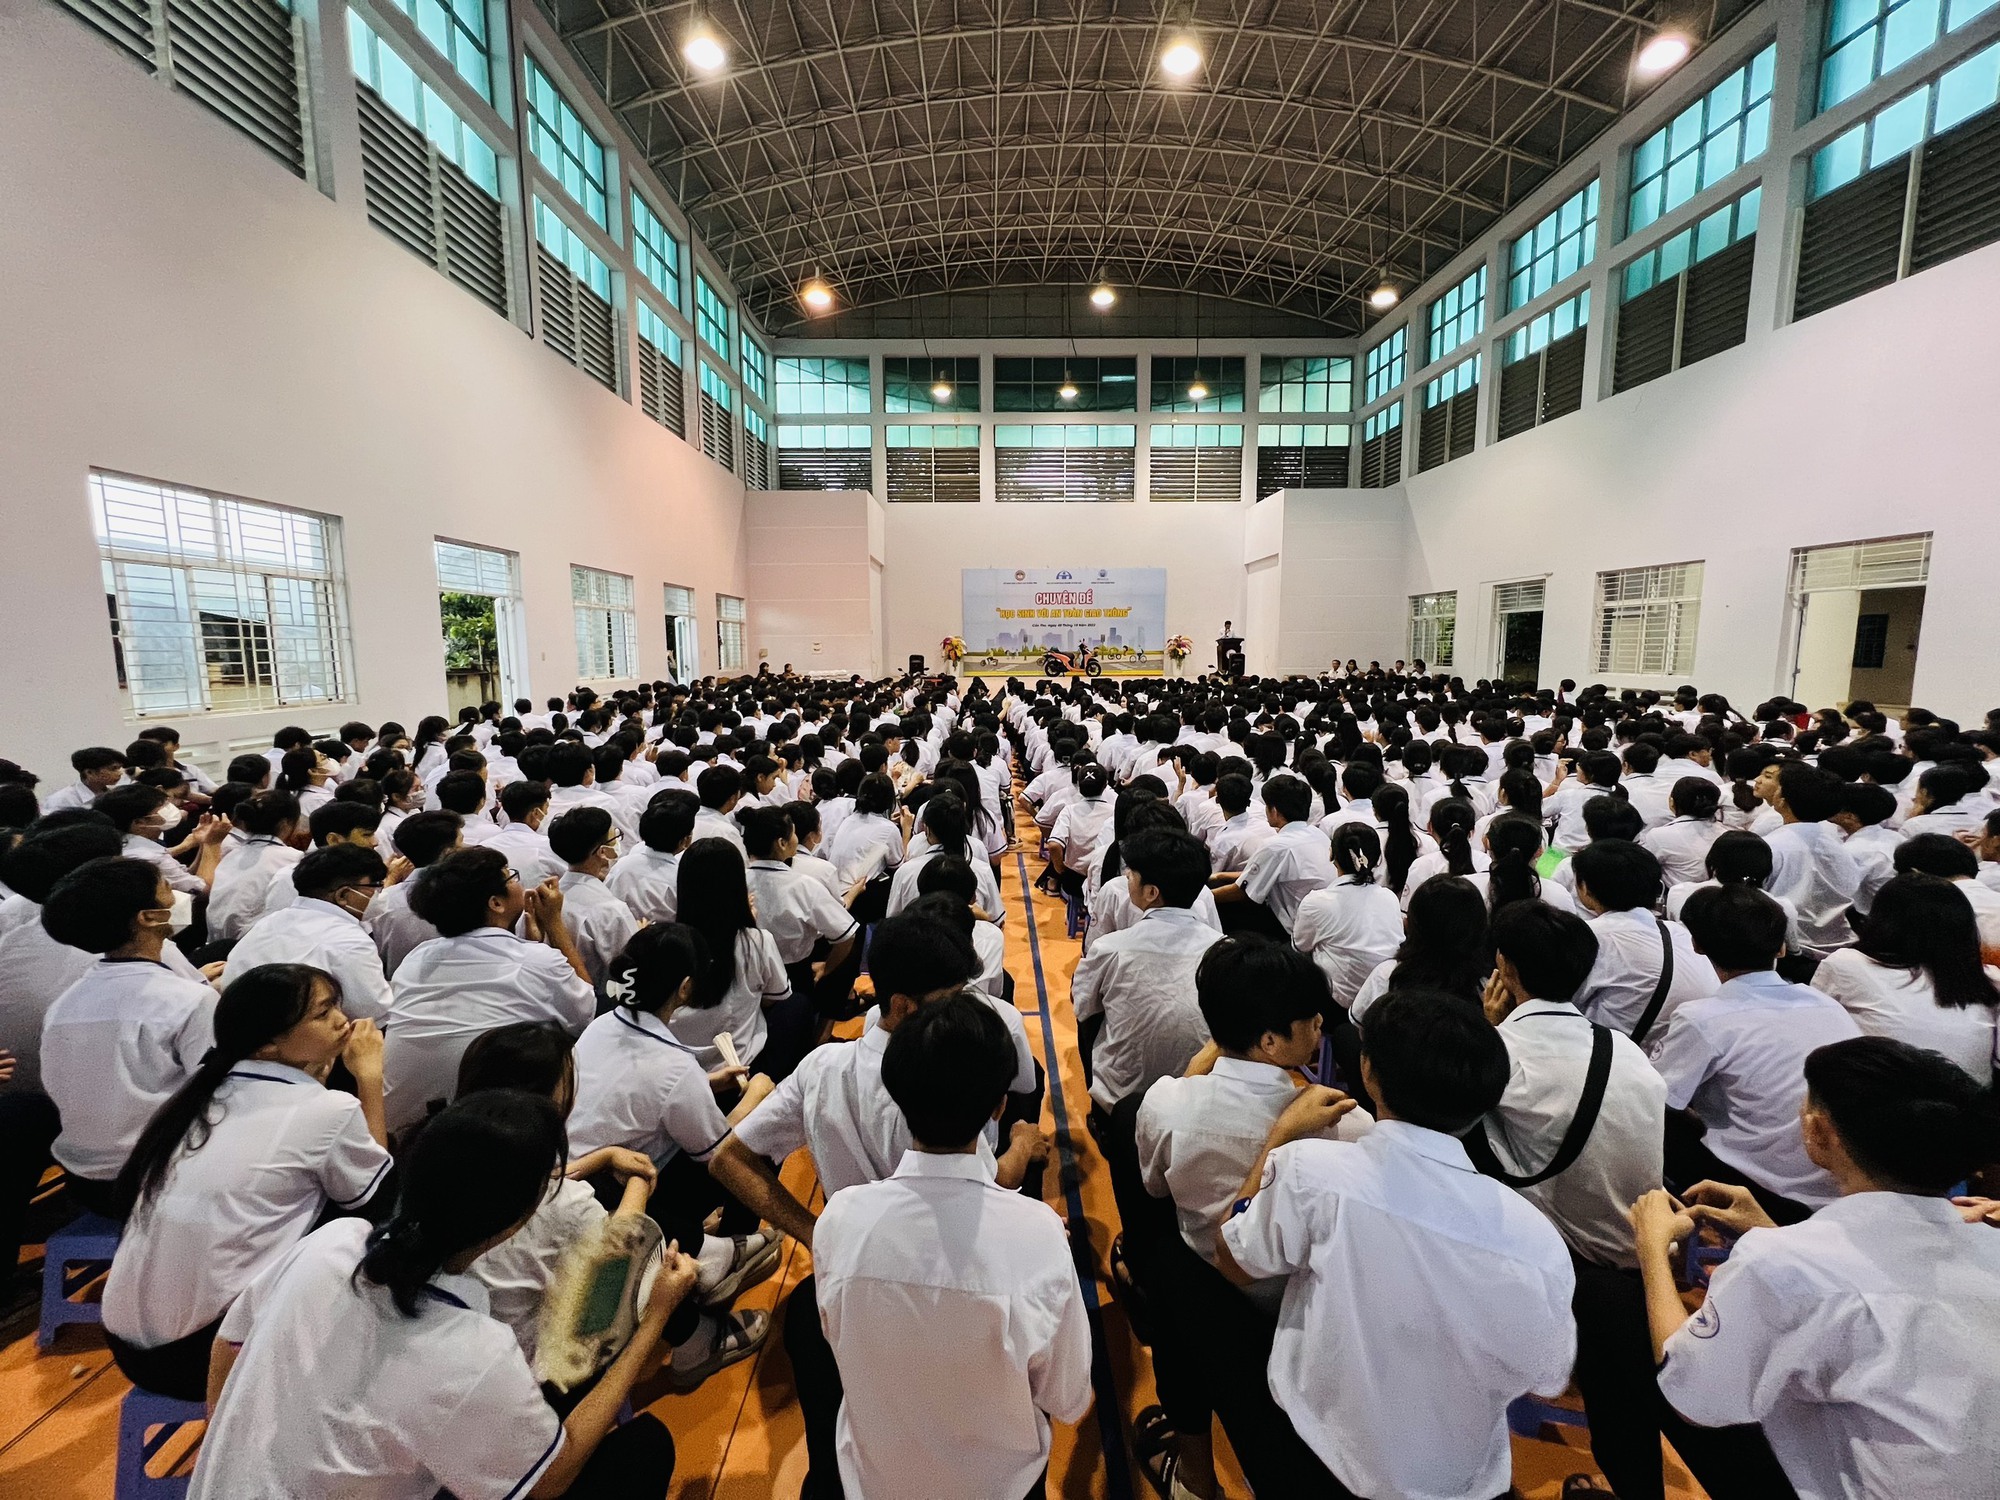 Hàng ngàn học sinh cấp 3 ở Cần Thơ háo hức nhận quà, nghe tuyên truyền an toàn giao thông - Ảnh 1.